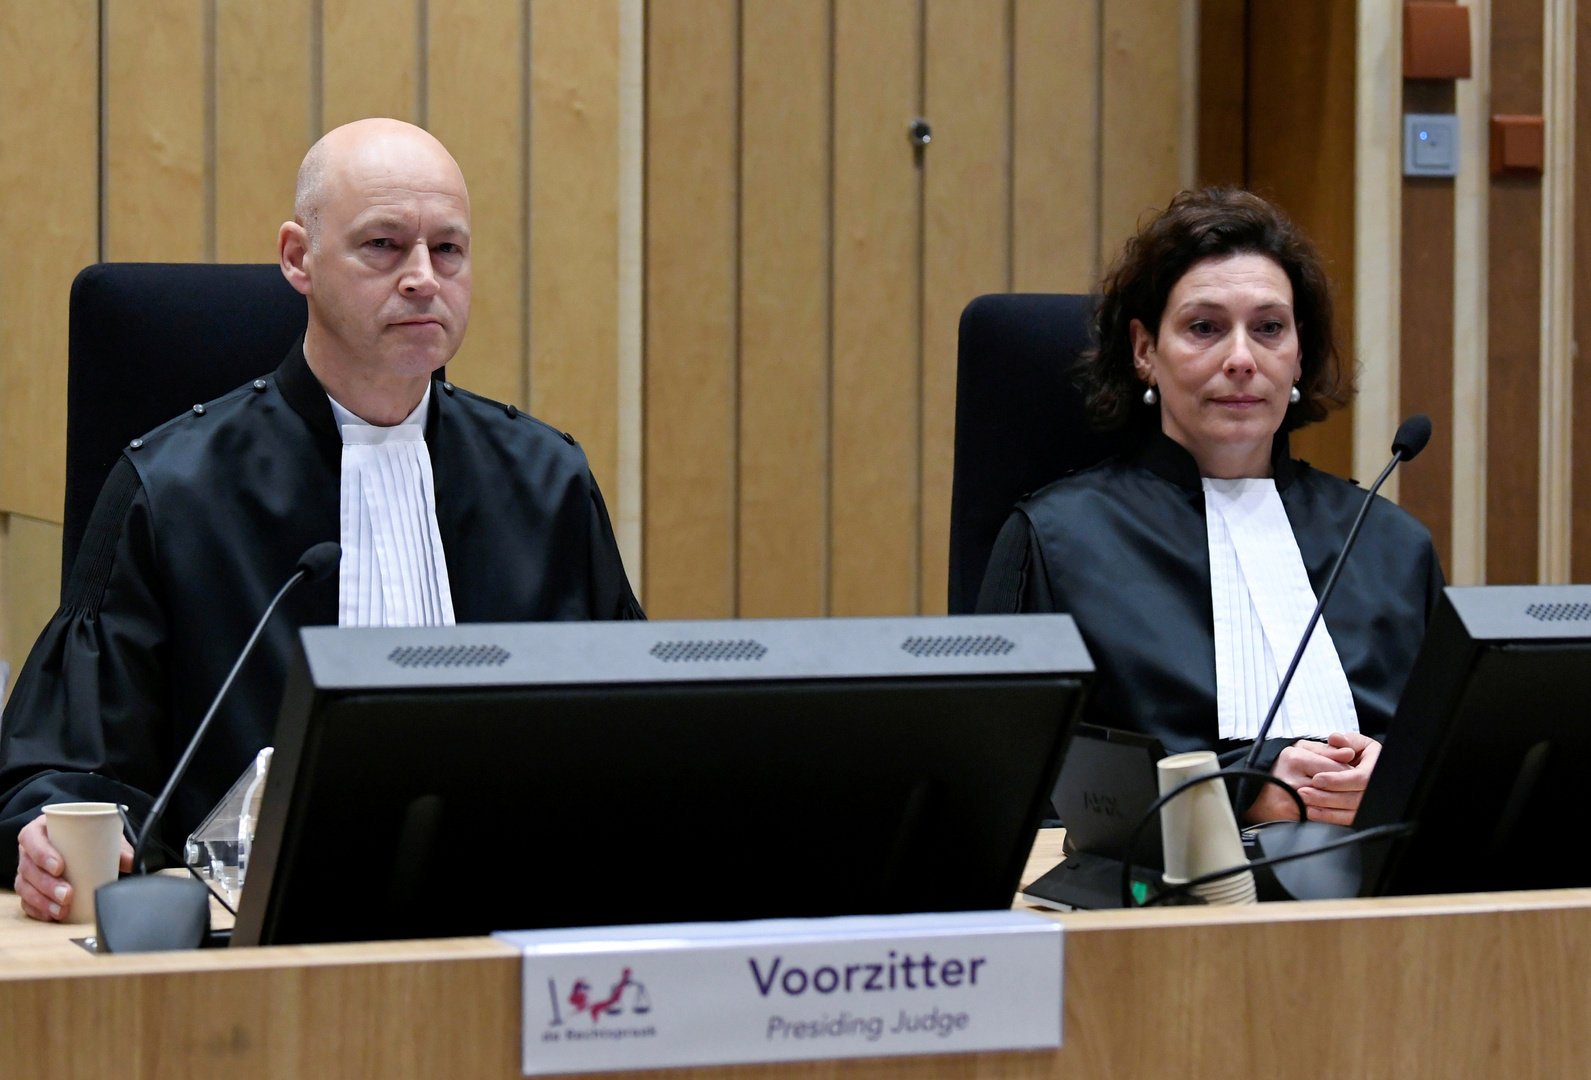 القضاء الهولندي يؤكد رفض المحققين إفادات تشير لمسؤولية كييف عن إسقاط 